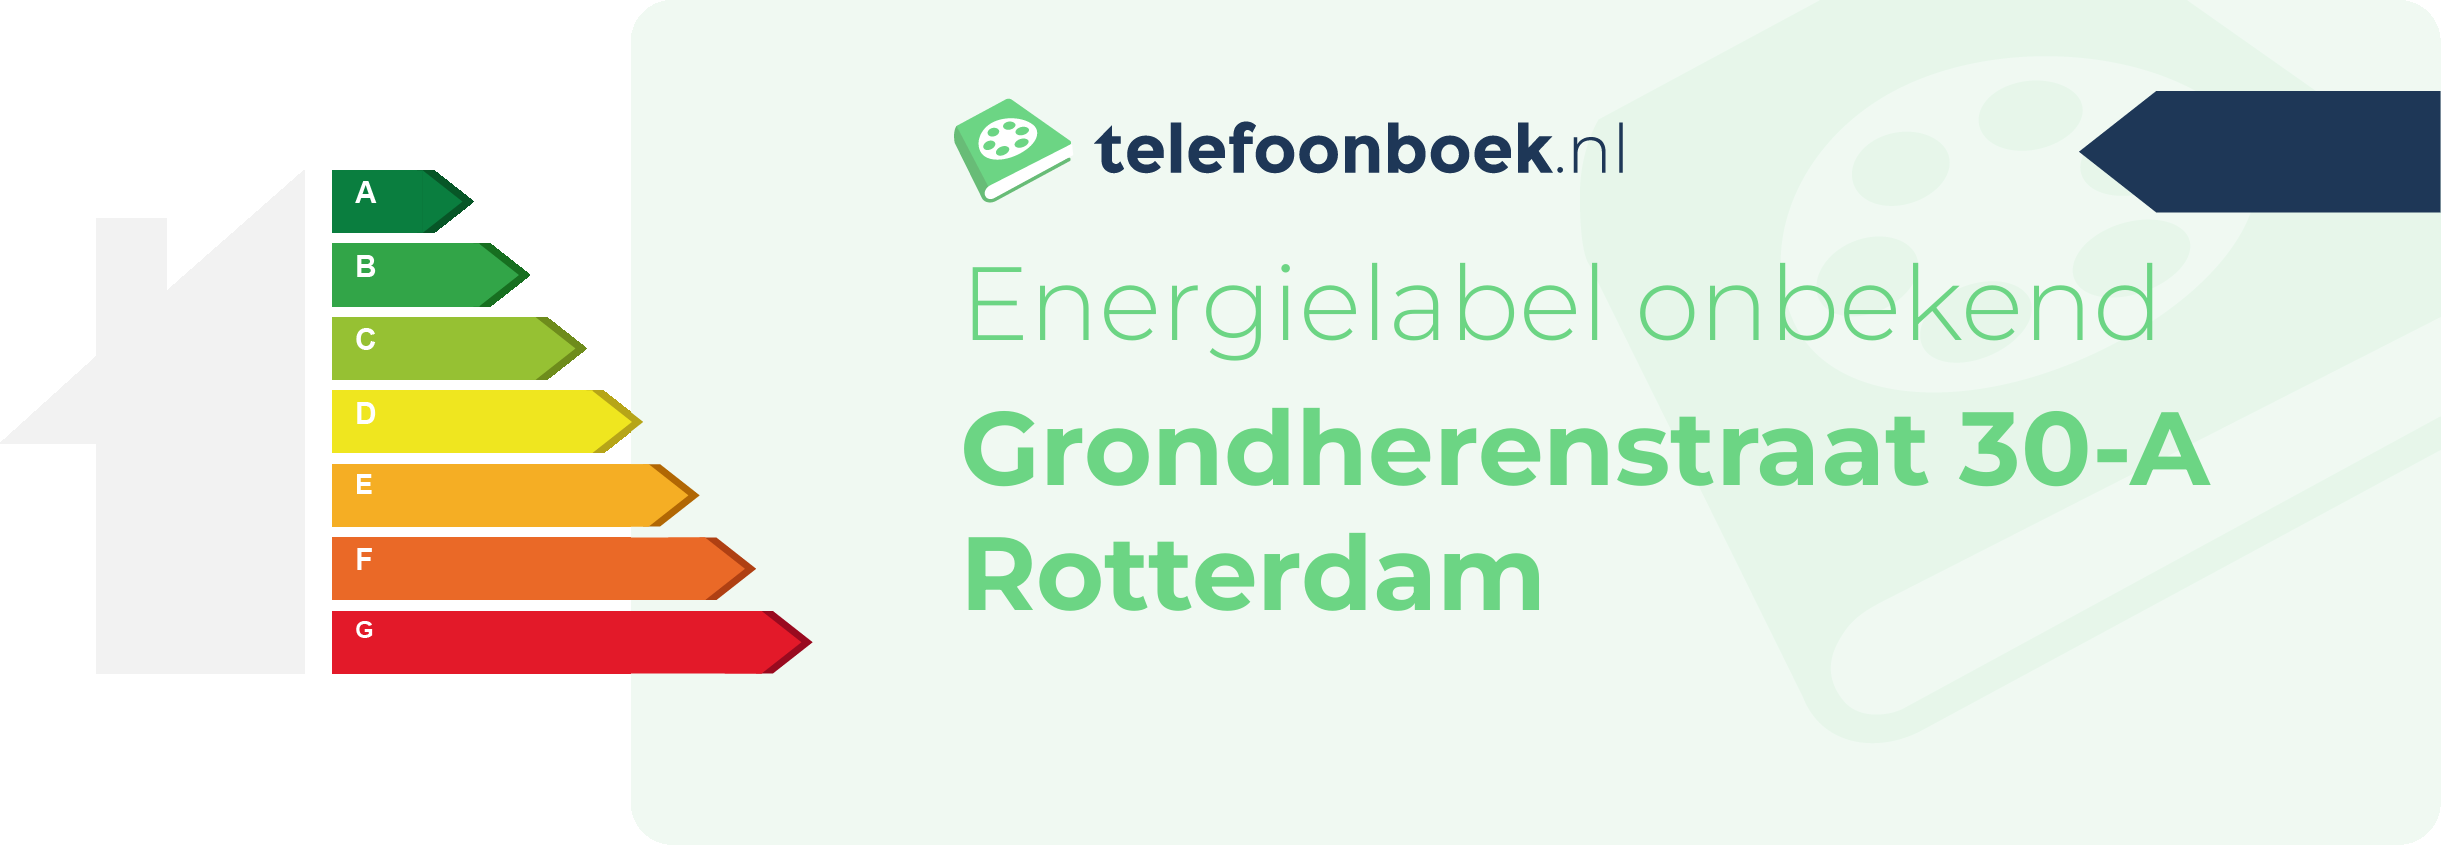 Energielabel Grondherenstraat 30-A Rotterdam